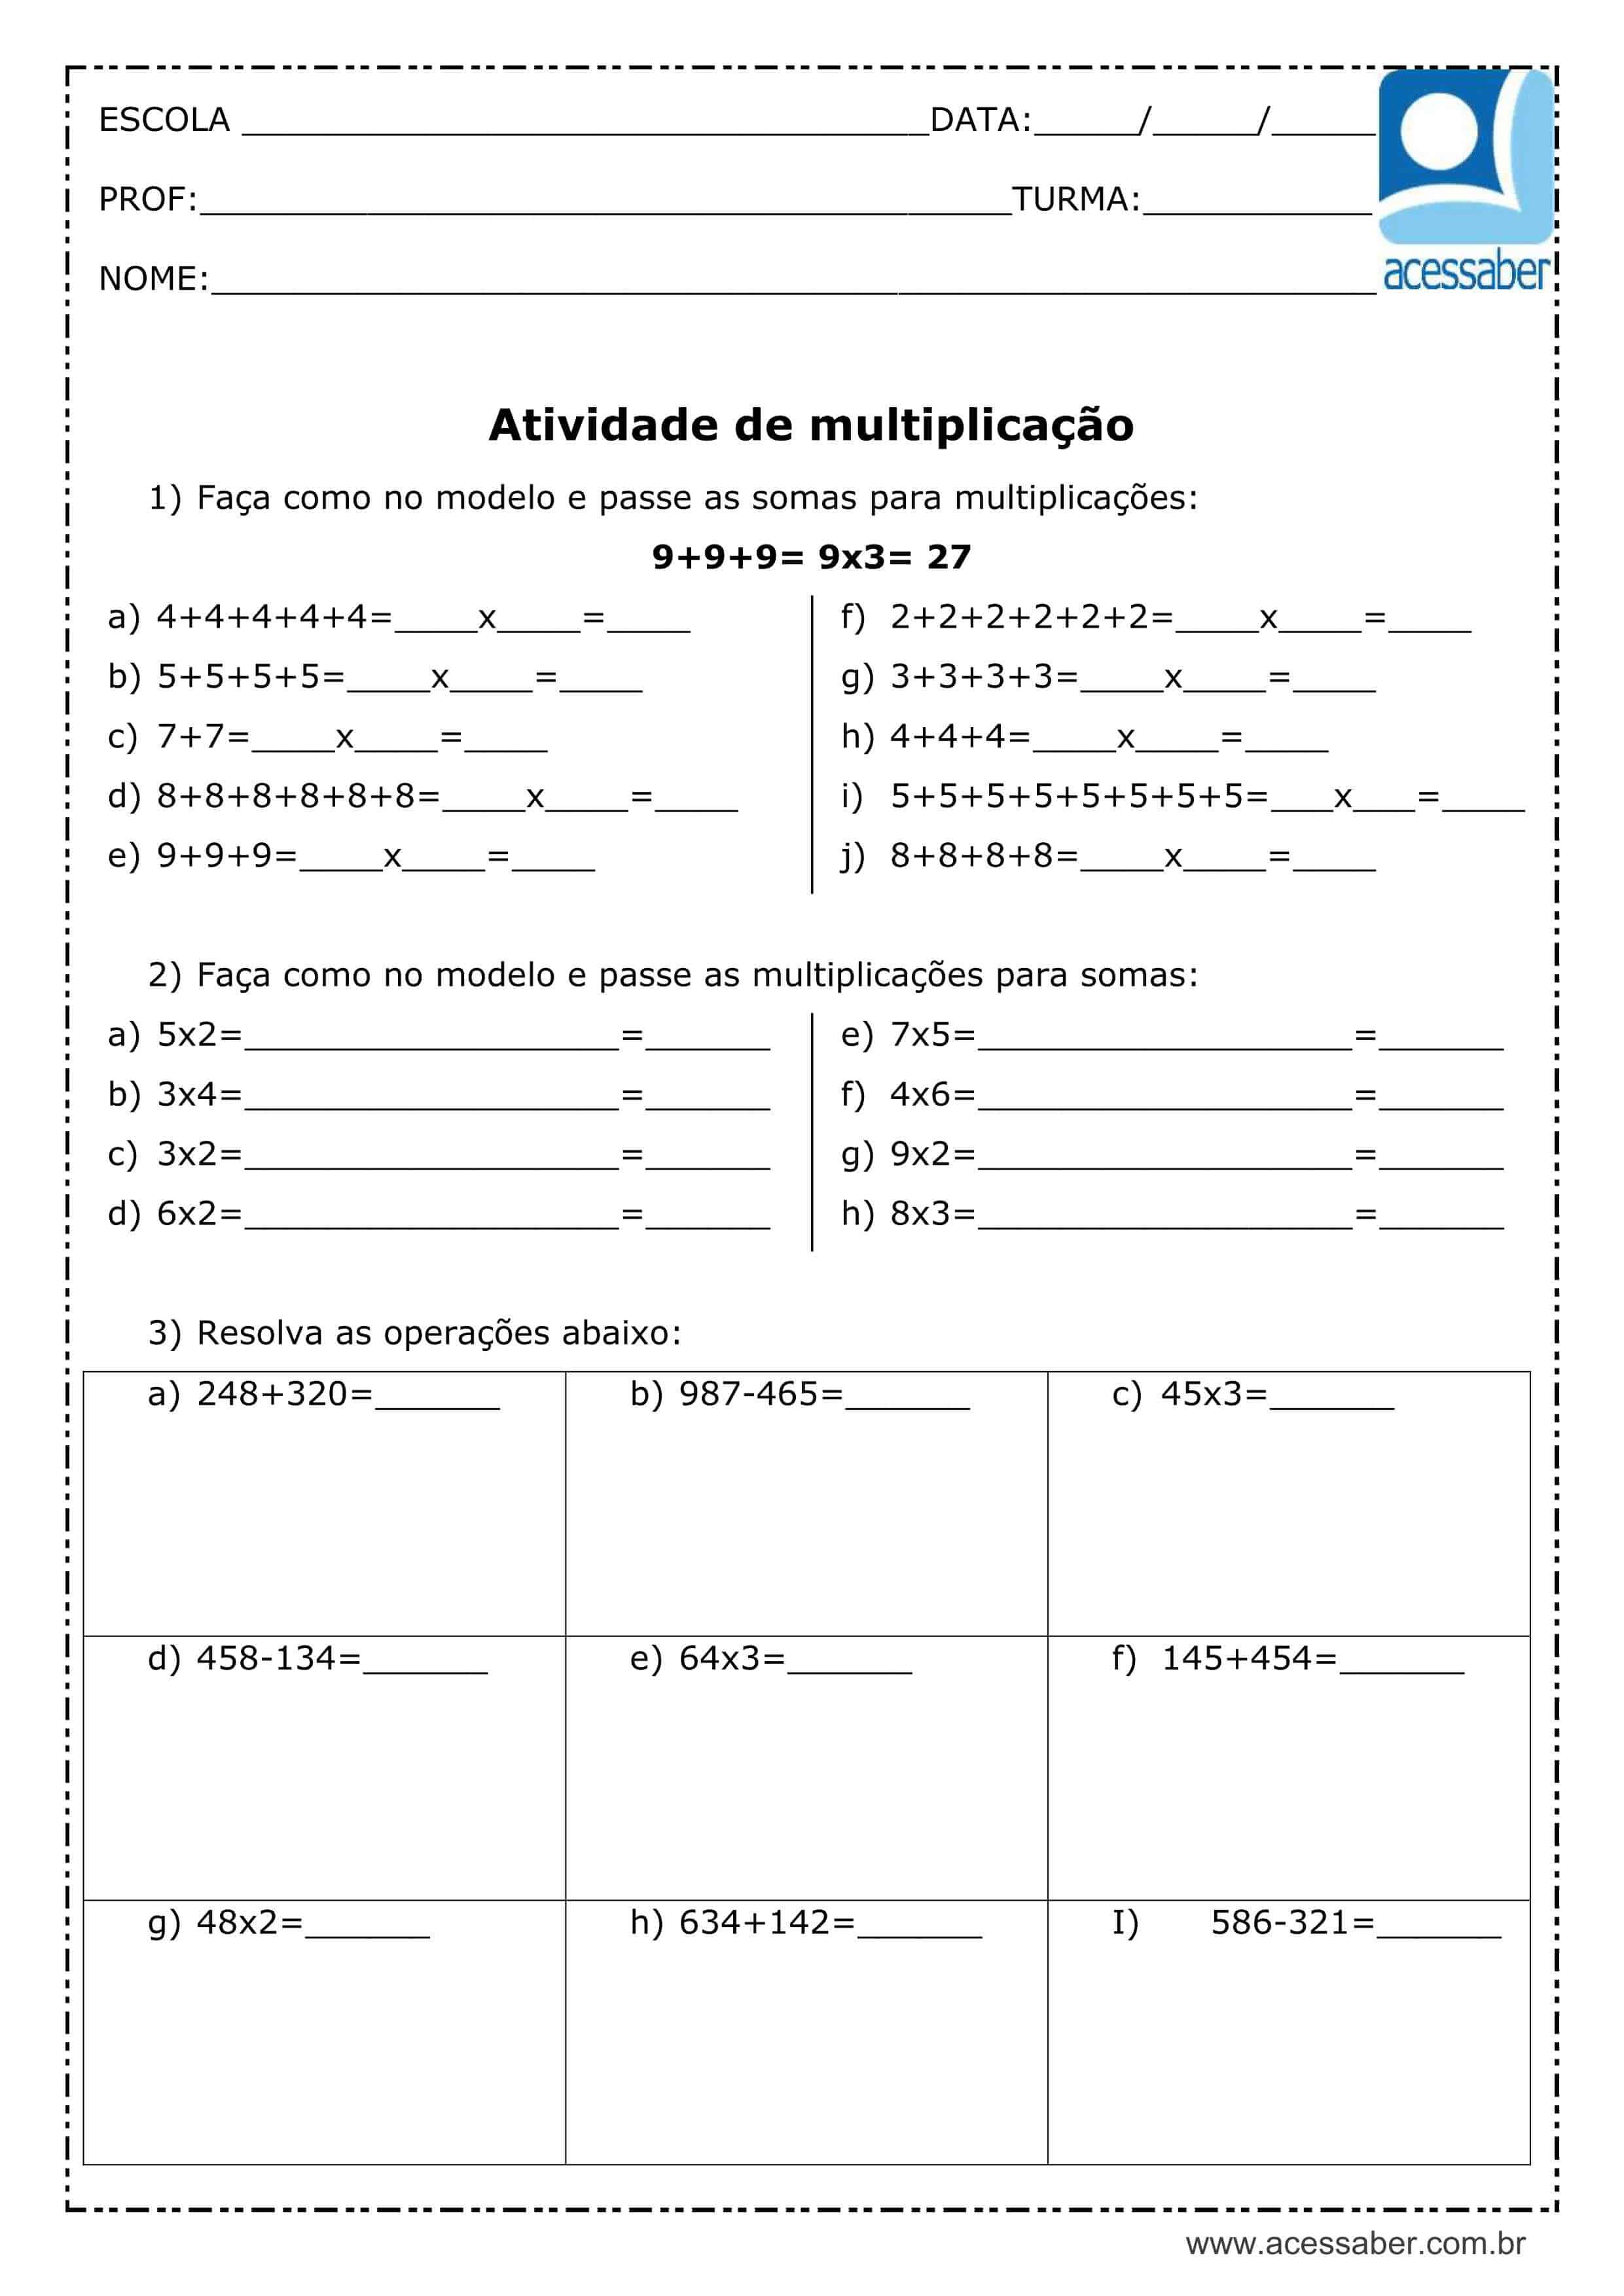 Atividades de Matemática para o 2º Ano sobre Multiplicação